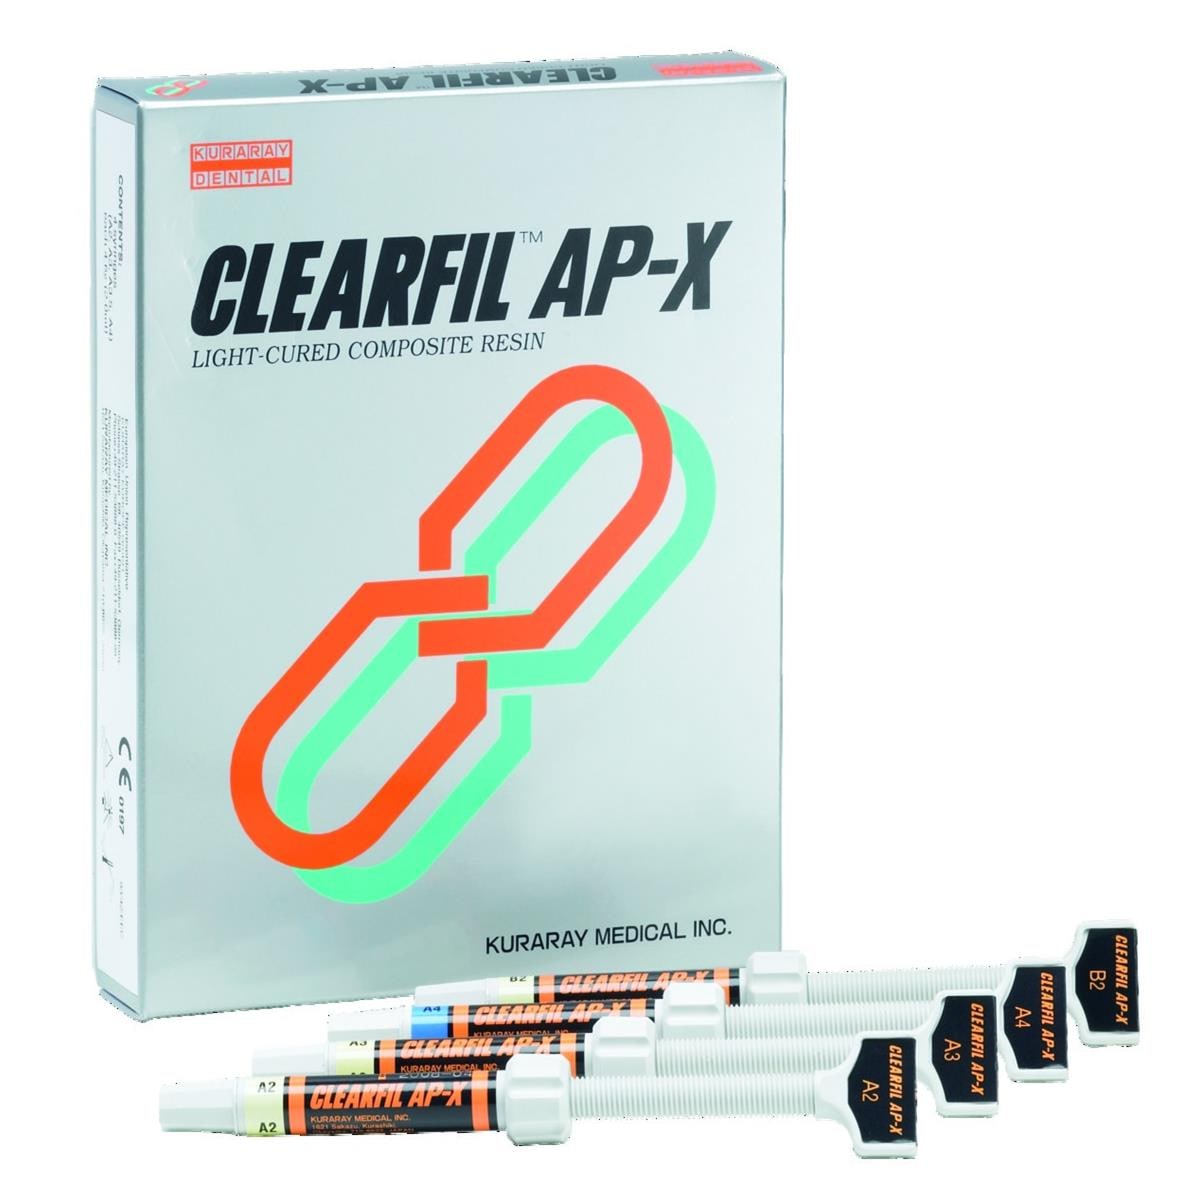 Clearfil AP-X KURARAY - A3,5 - Seringue de 4,6g